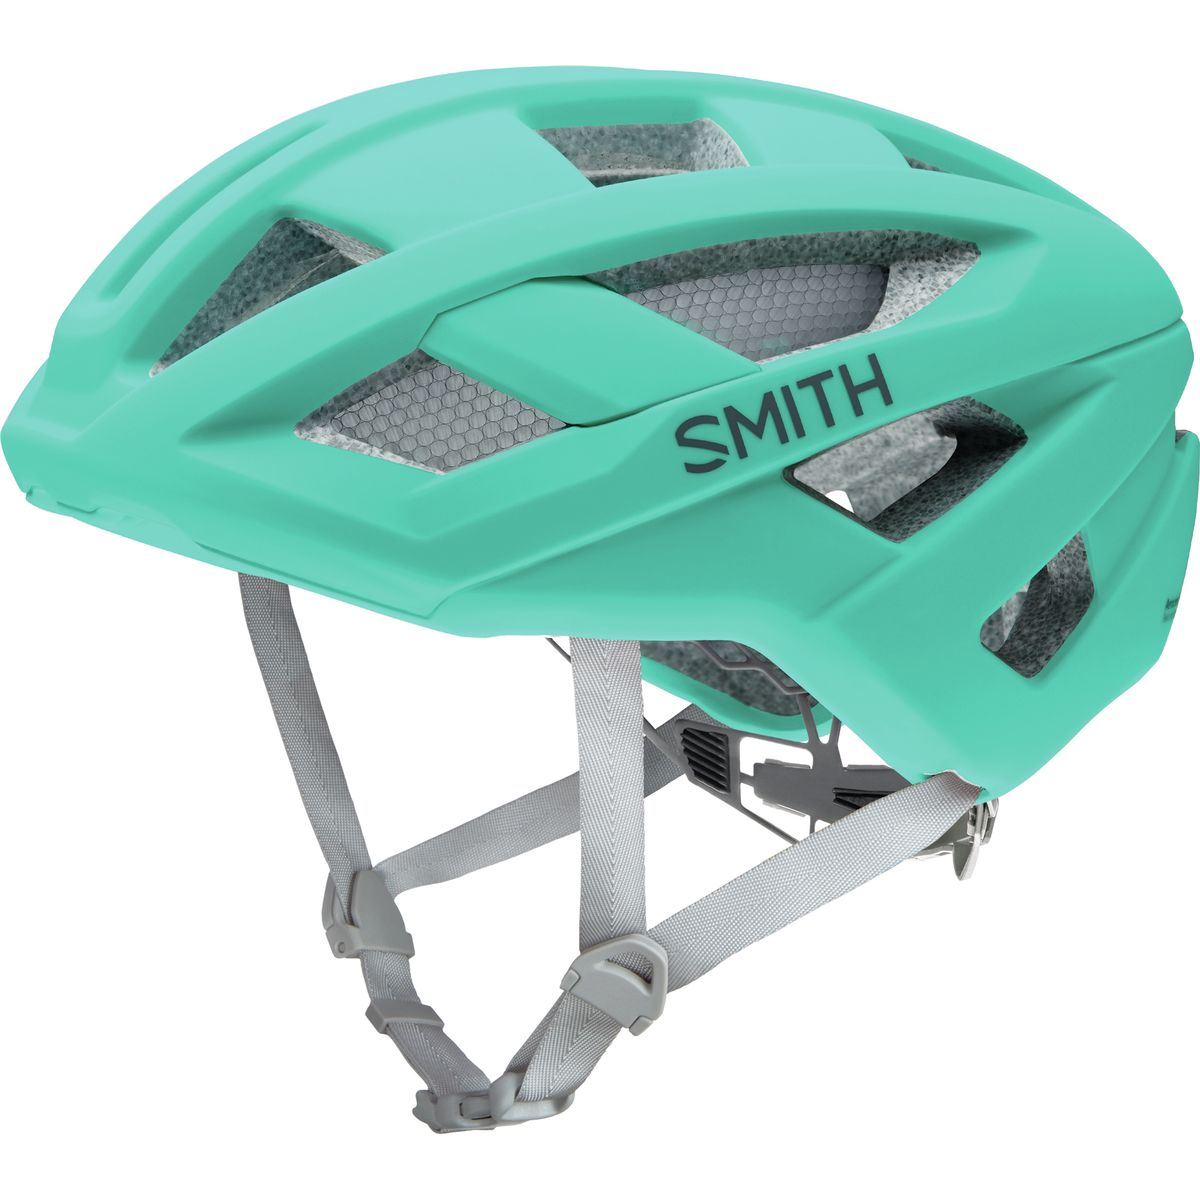 Smith Route MIPS Helmet